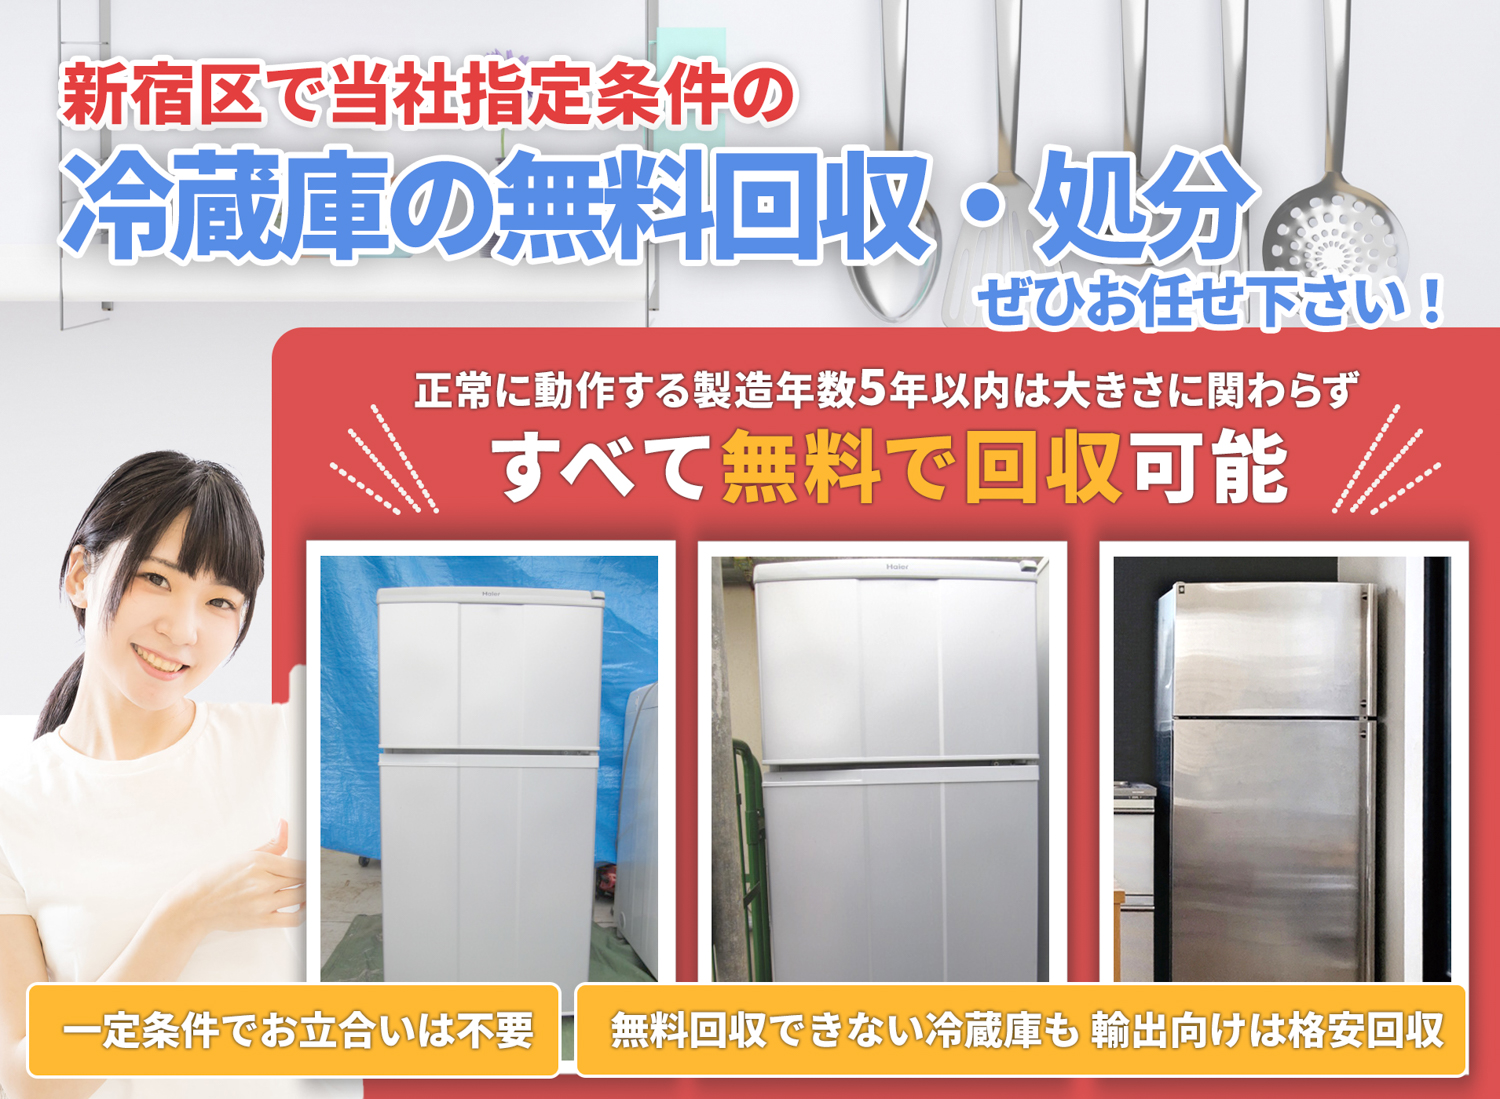 新宿区のサービスで地域一番を目指す冷蔵庫無料回収処分隊の冷蔵庫無料回収サービス